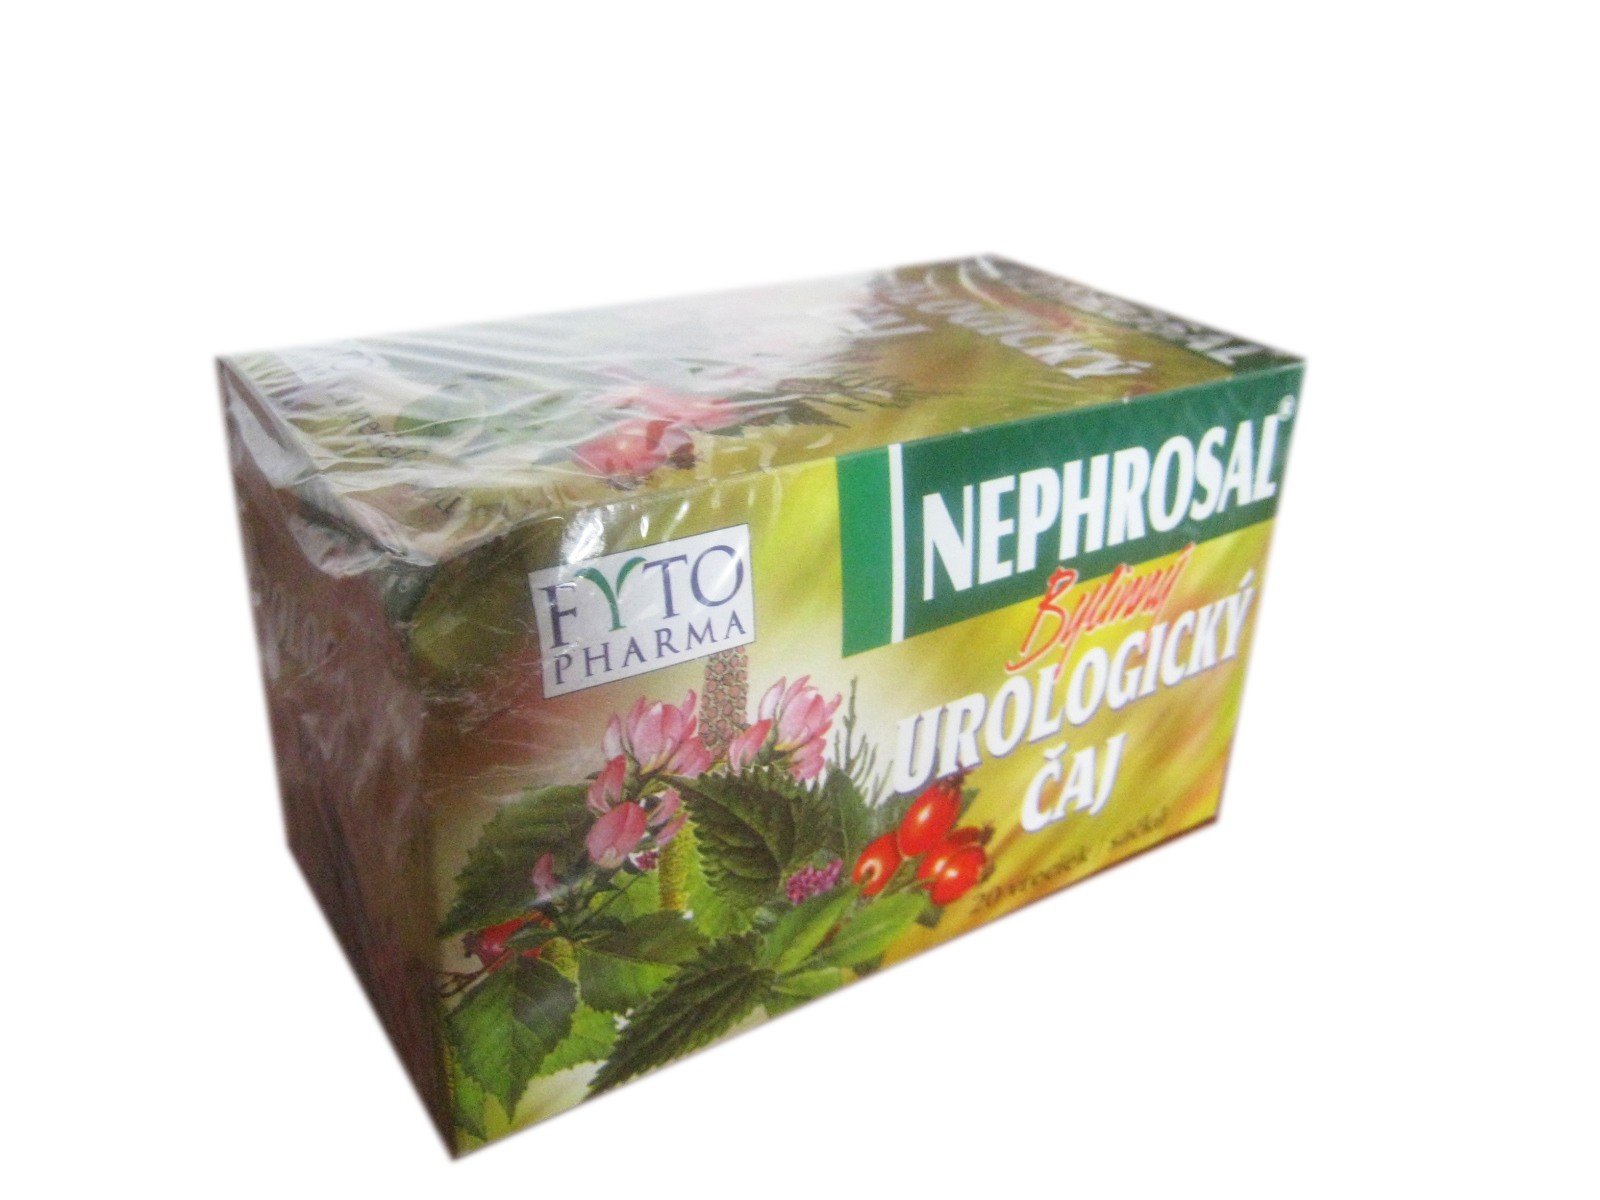 E-shop FYTO Pharma Čaj Nephrosal Urologický 20x1,5g